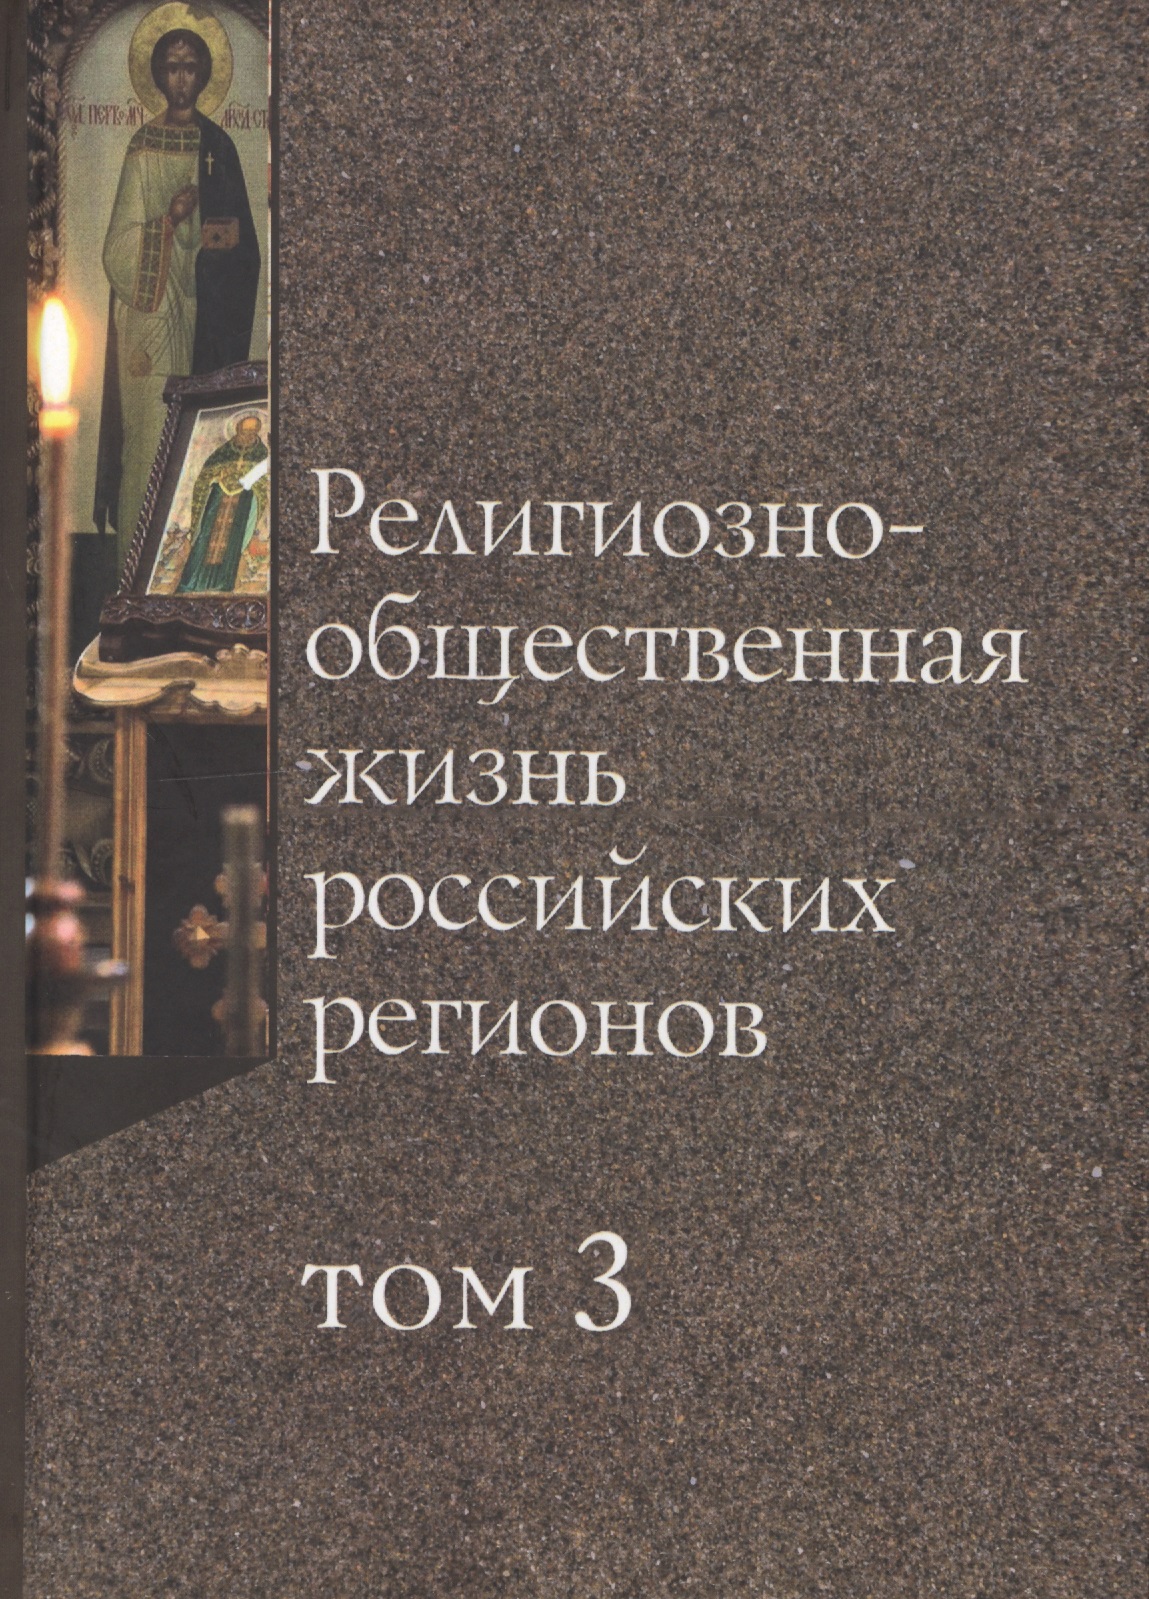 Религиозно-общественная жизнь российских регионов. Том III